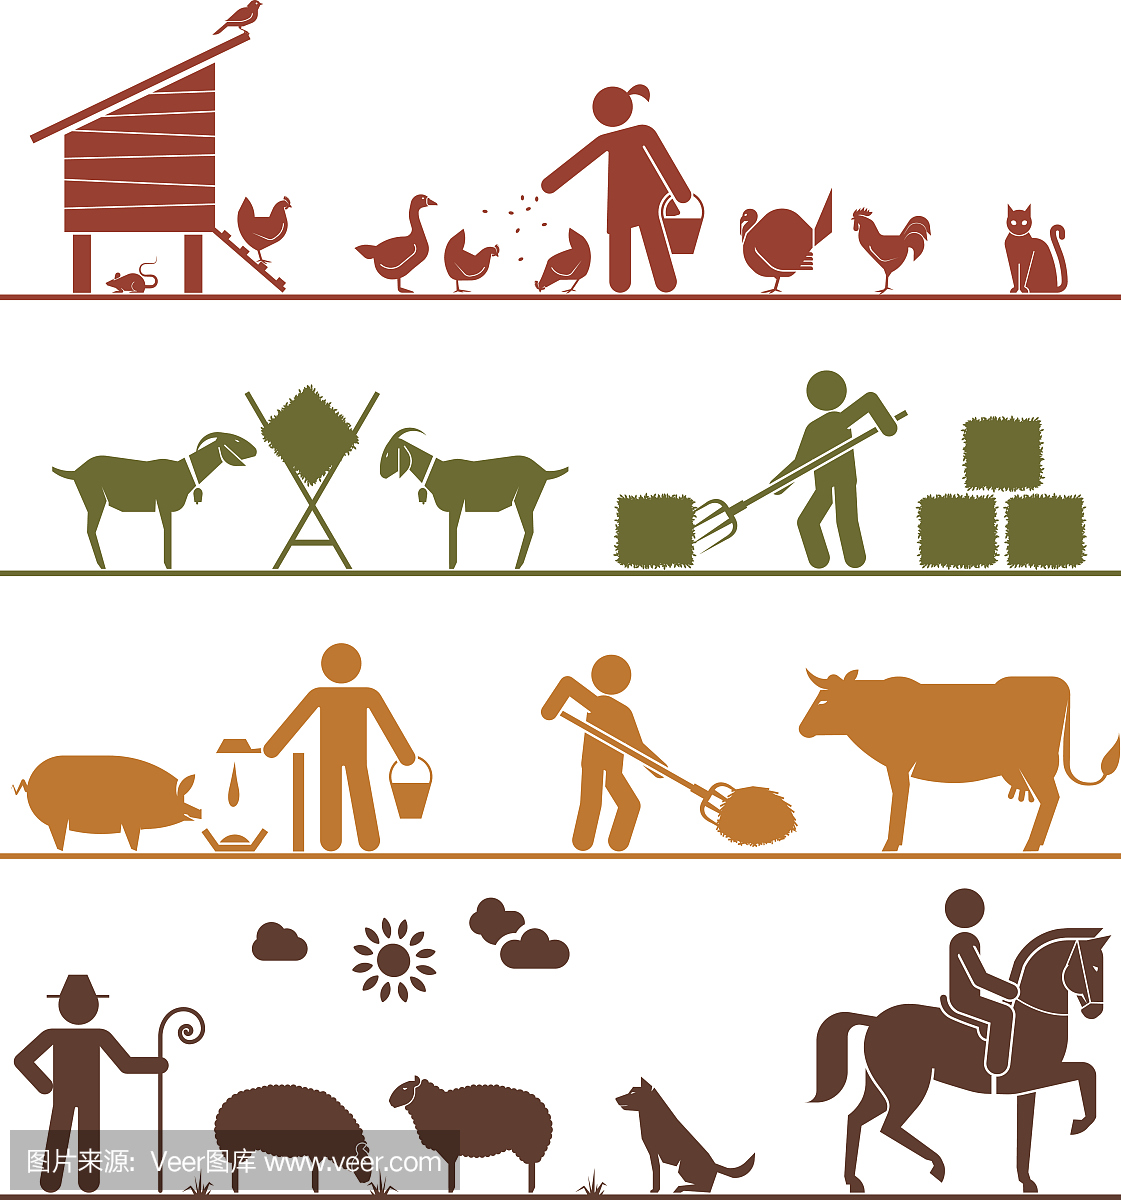 表示饲养家畜的象形图标。